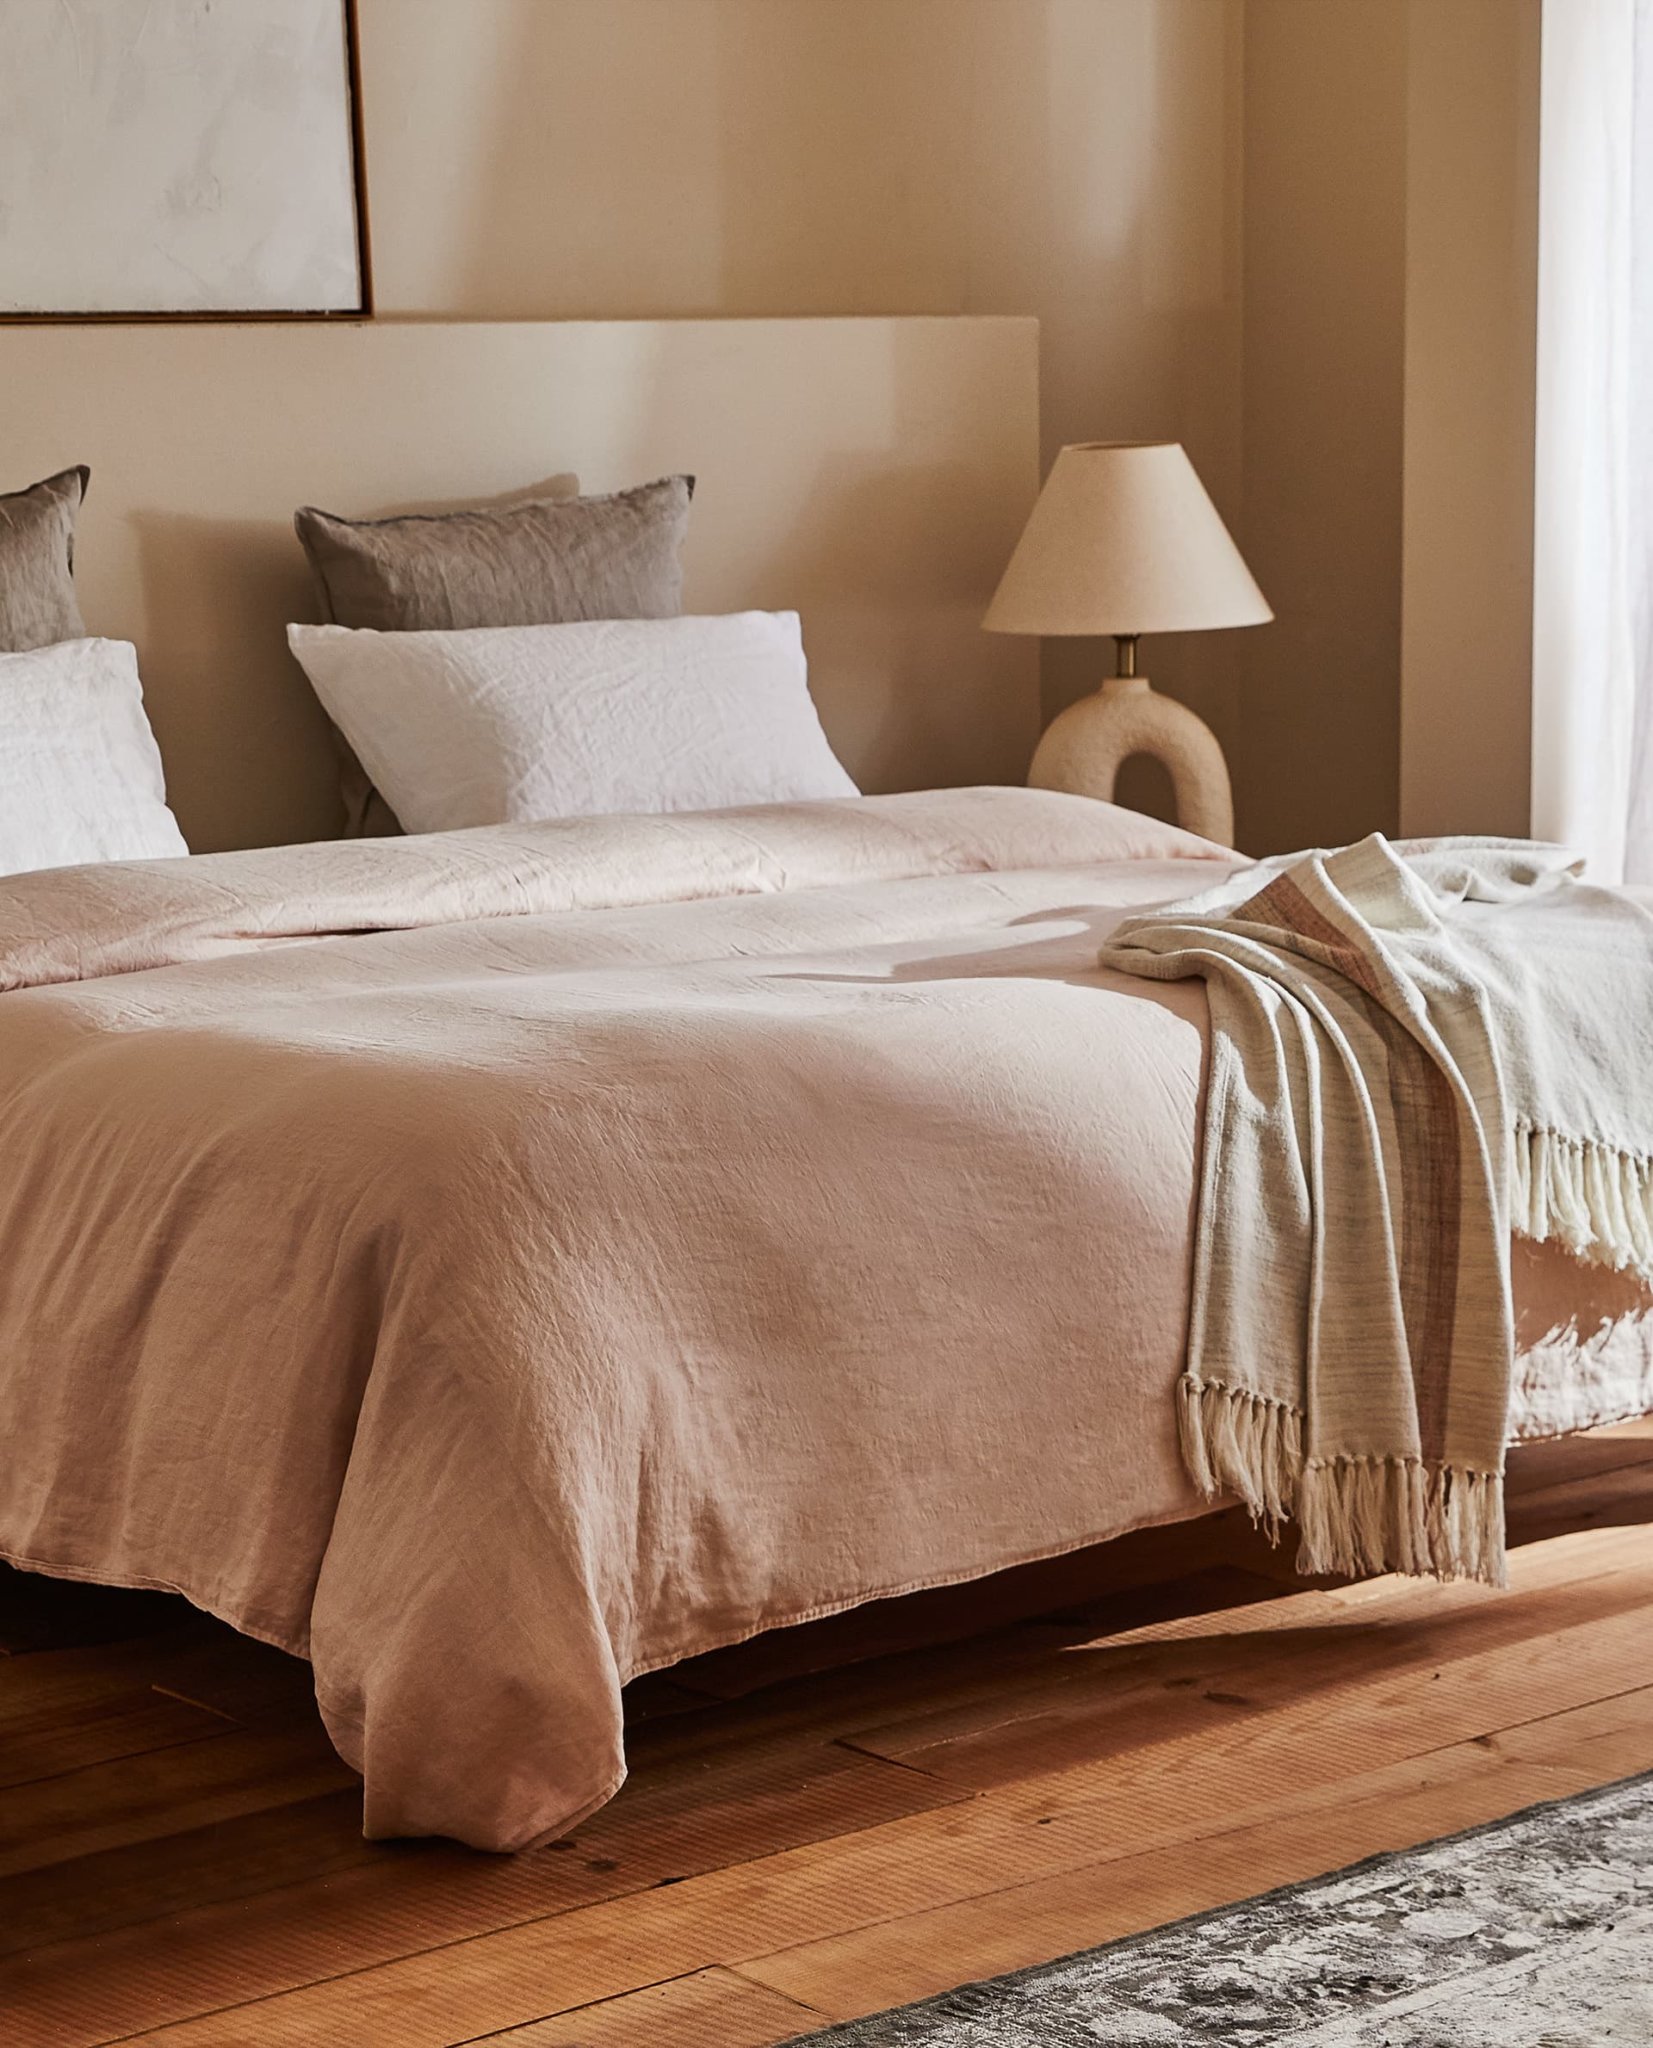 Phòng ngủ với màu trung tính, bộ ga trải giường bằng vải lanh mềm mại khiến chủ nhân của nó thực sự cảm nhận được đây là không gian thư giãn yên bình.